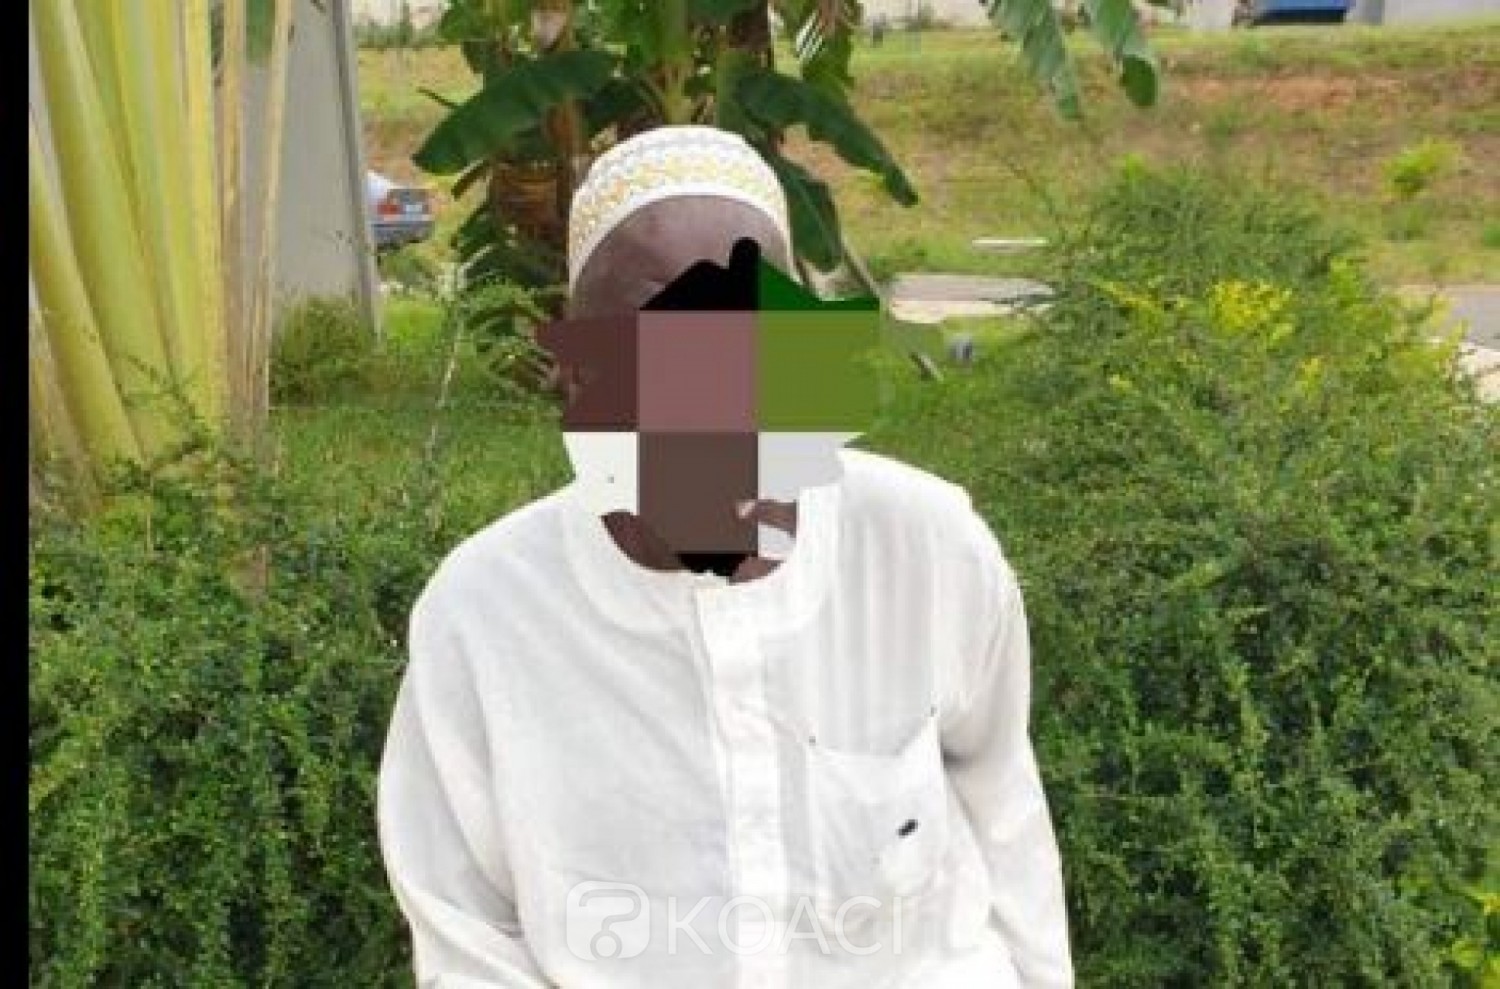 Côte d'Ivoire : Affaire de Drogue saisie à Bassam, le présumé propriétaire en « fuite » son père interpellé